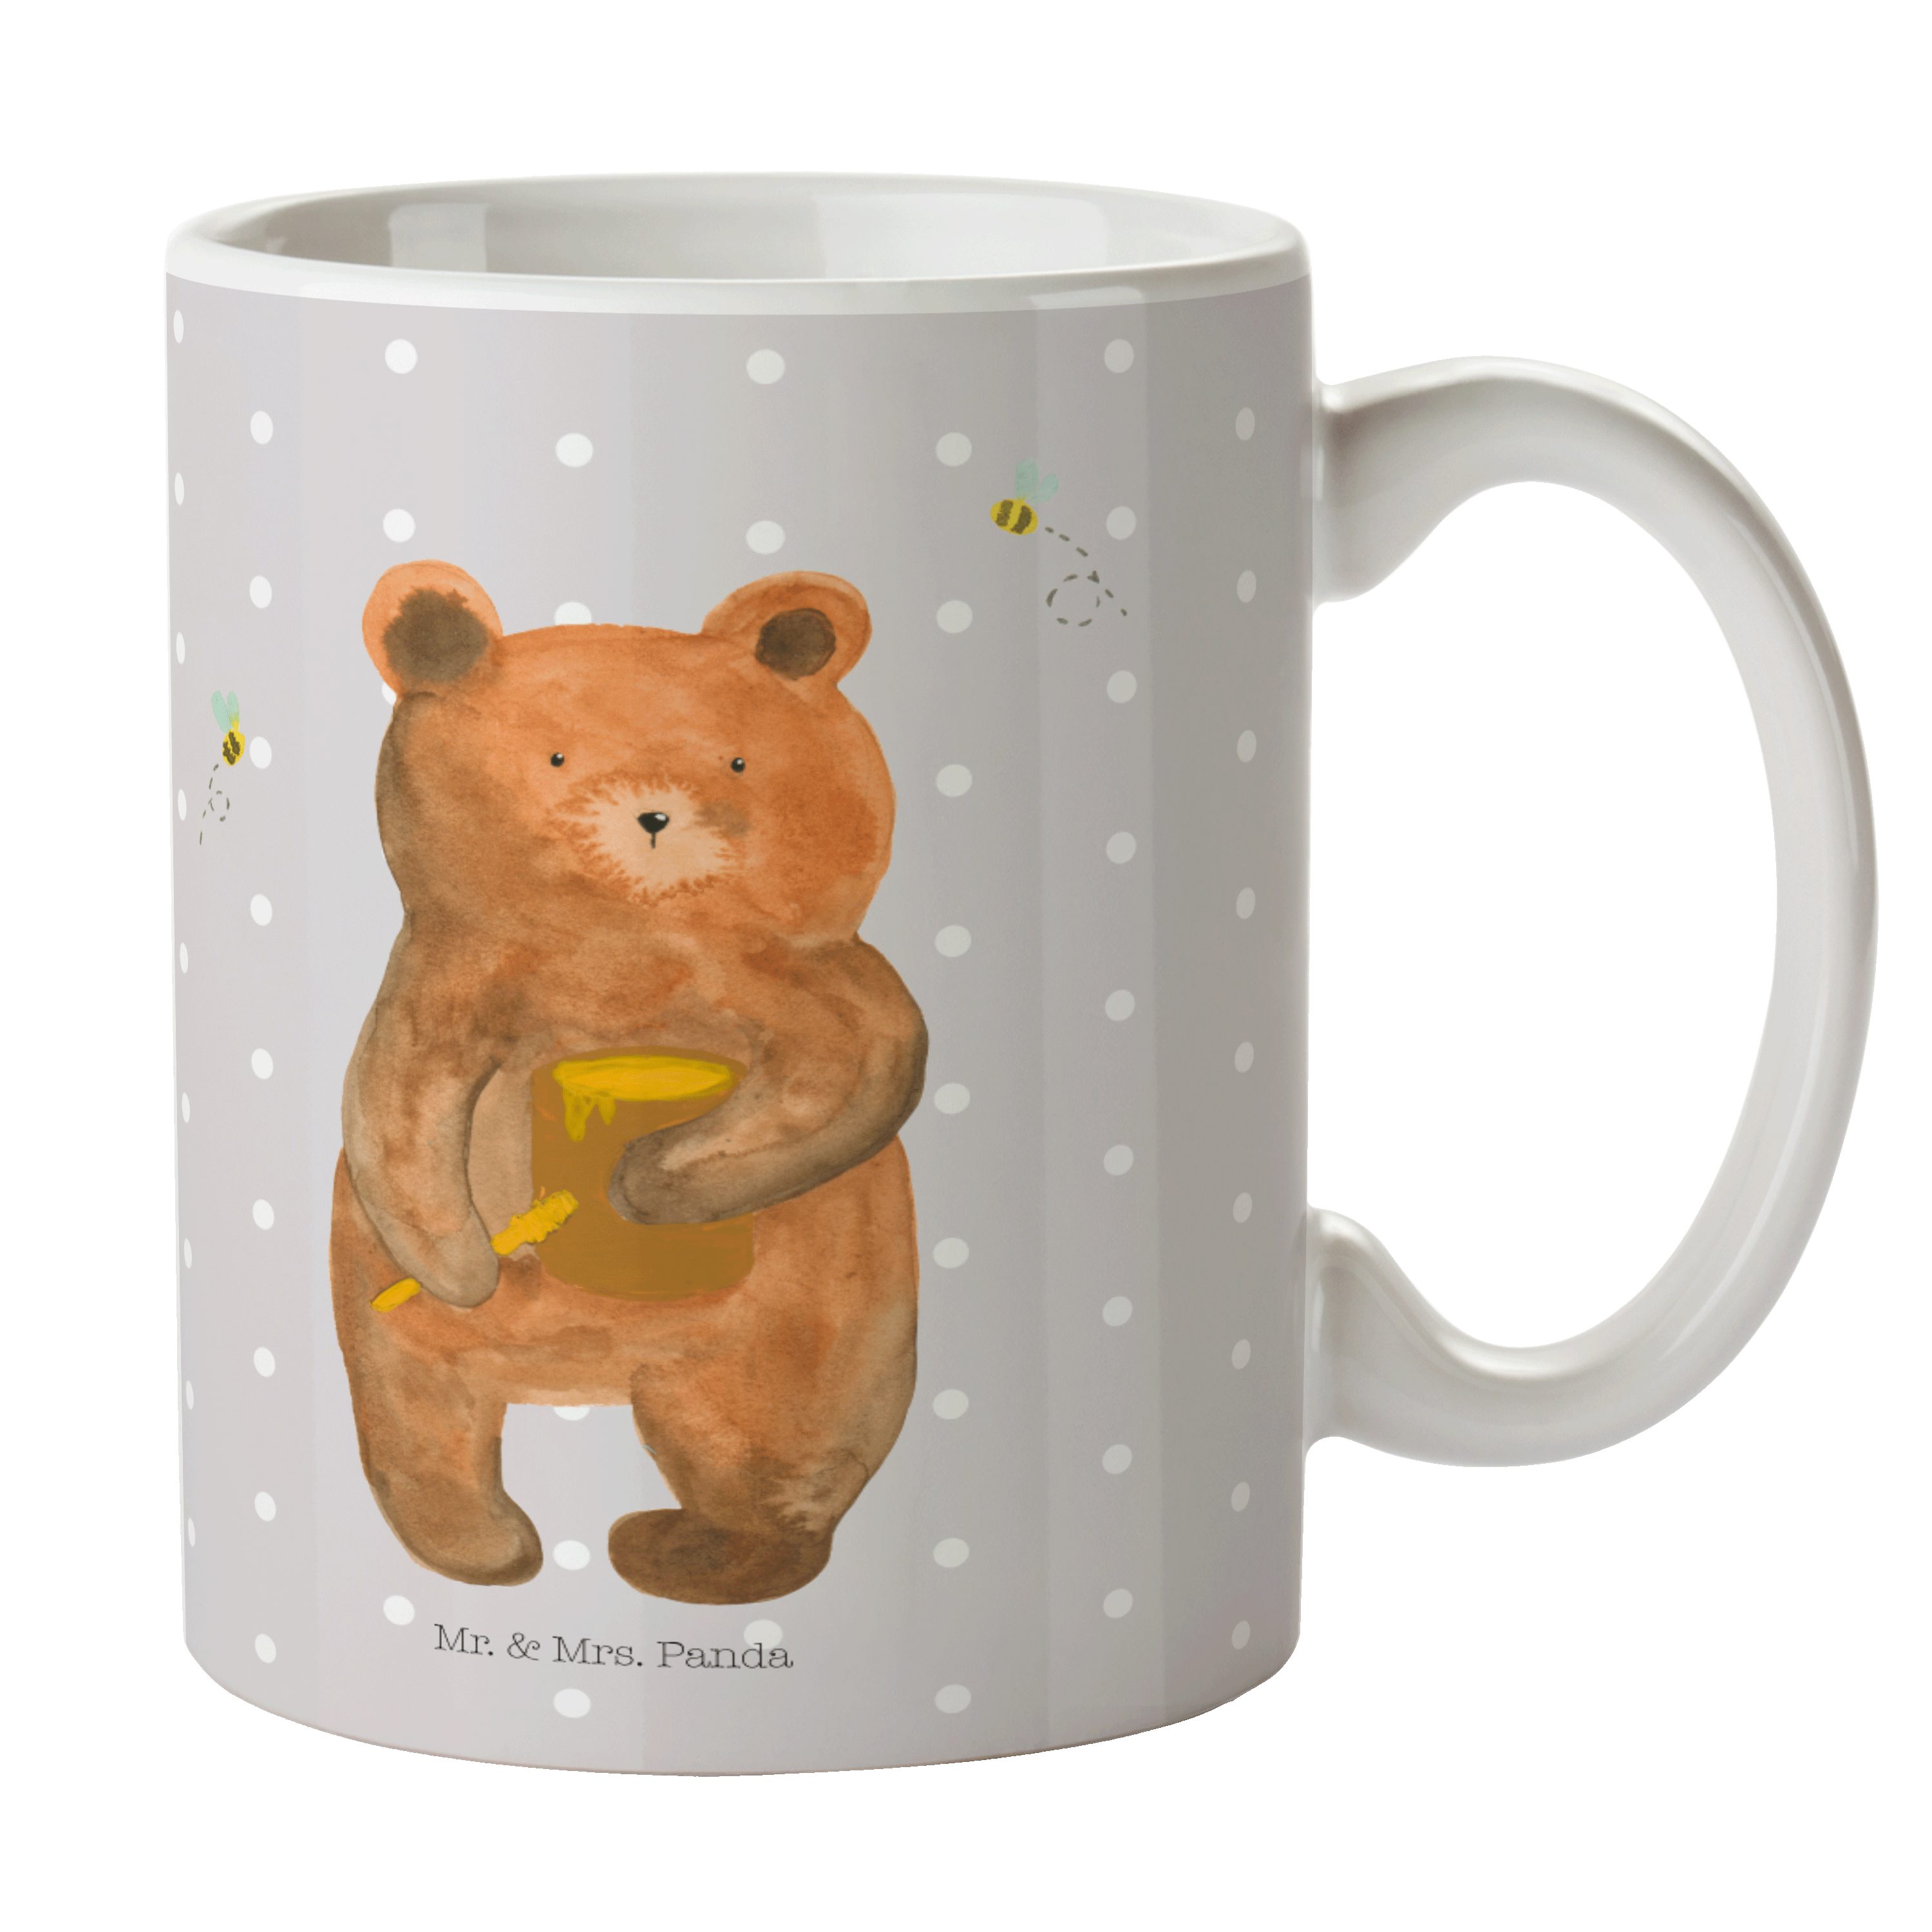 Mr. & Mrs. Panda Tasse Honigbär - Grau Pastell - Geschenk, Verliebte, Teddy, Tasse Sprüche, Keramik